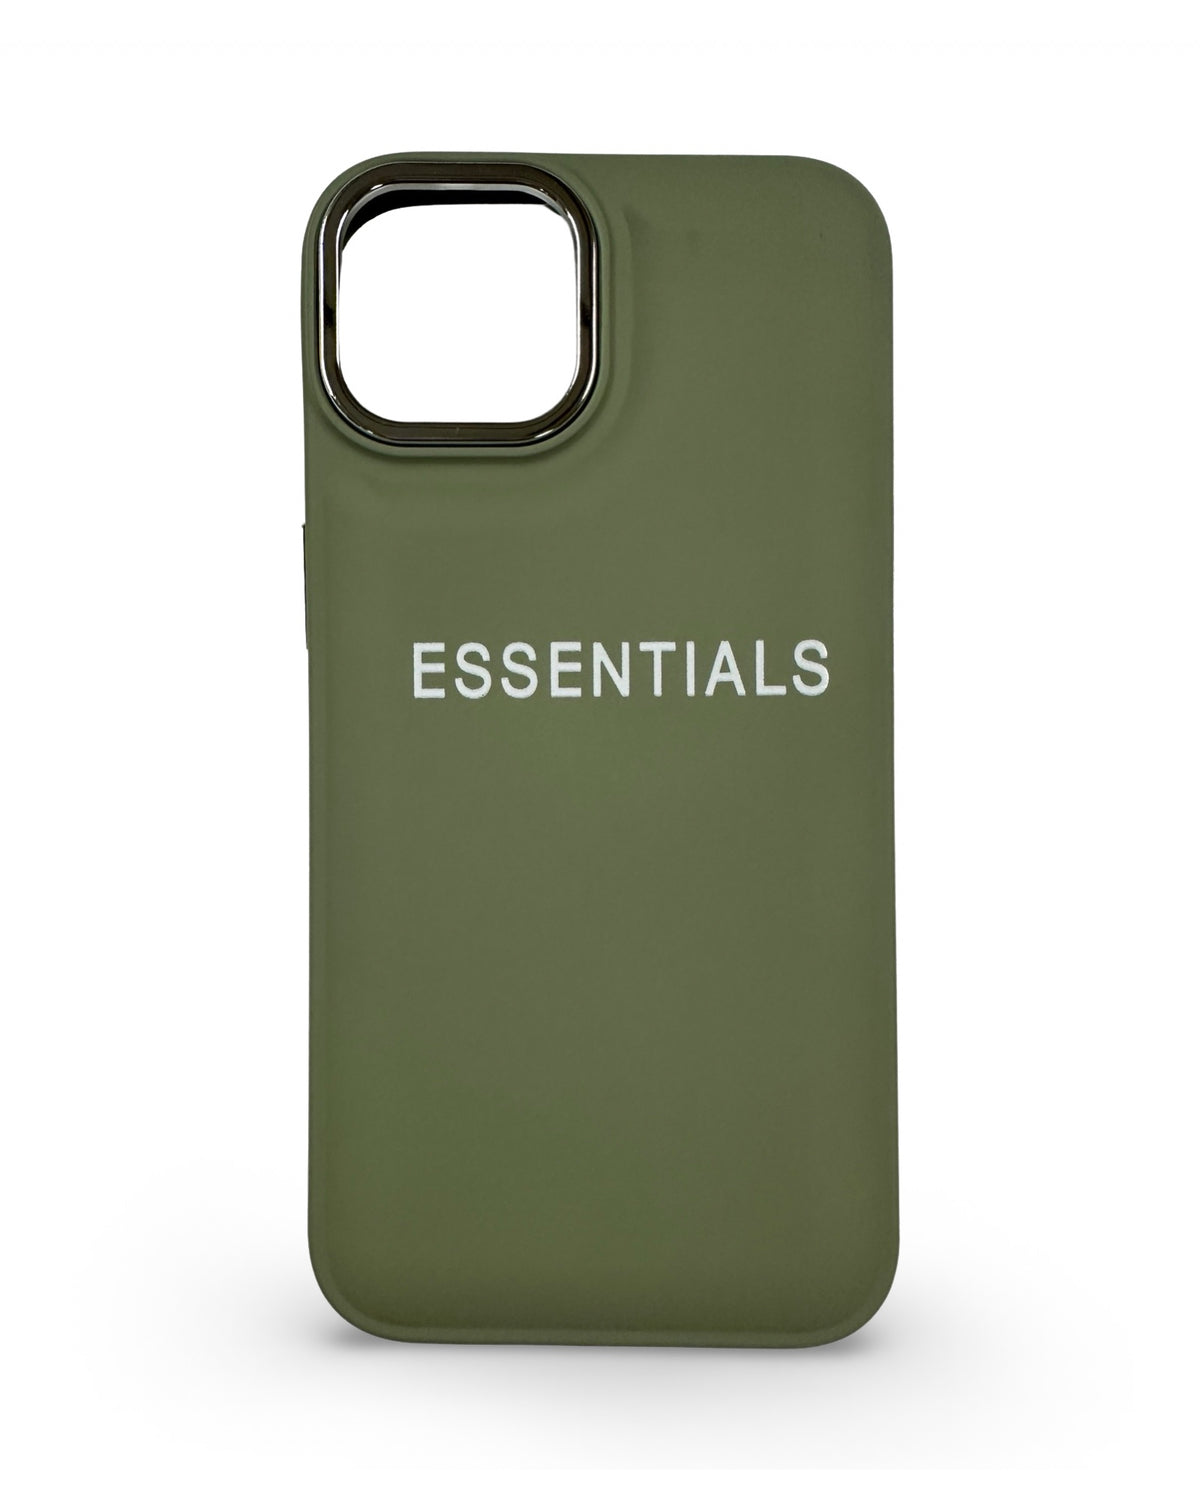 CaseNerd "Essential Olive" iPhone Case